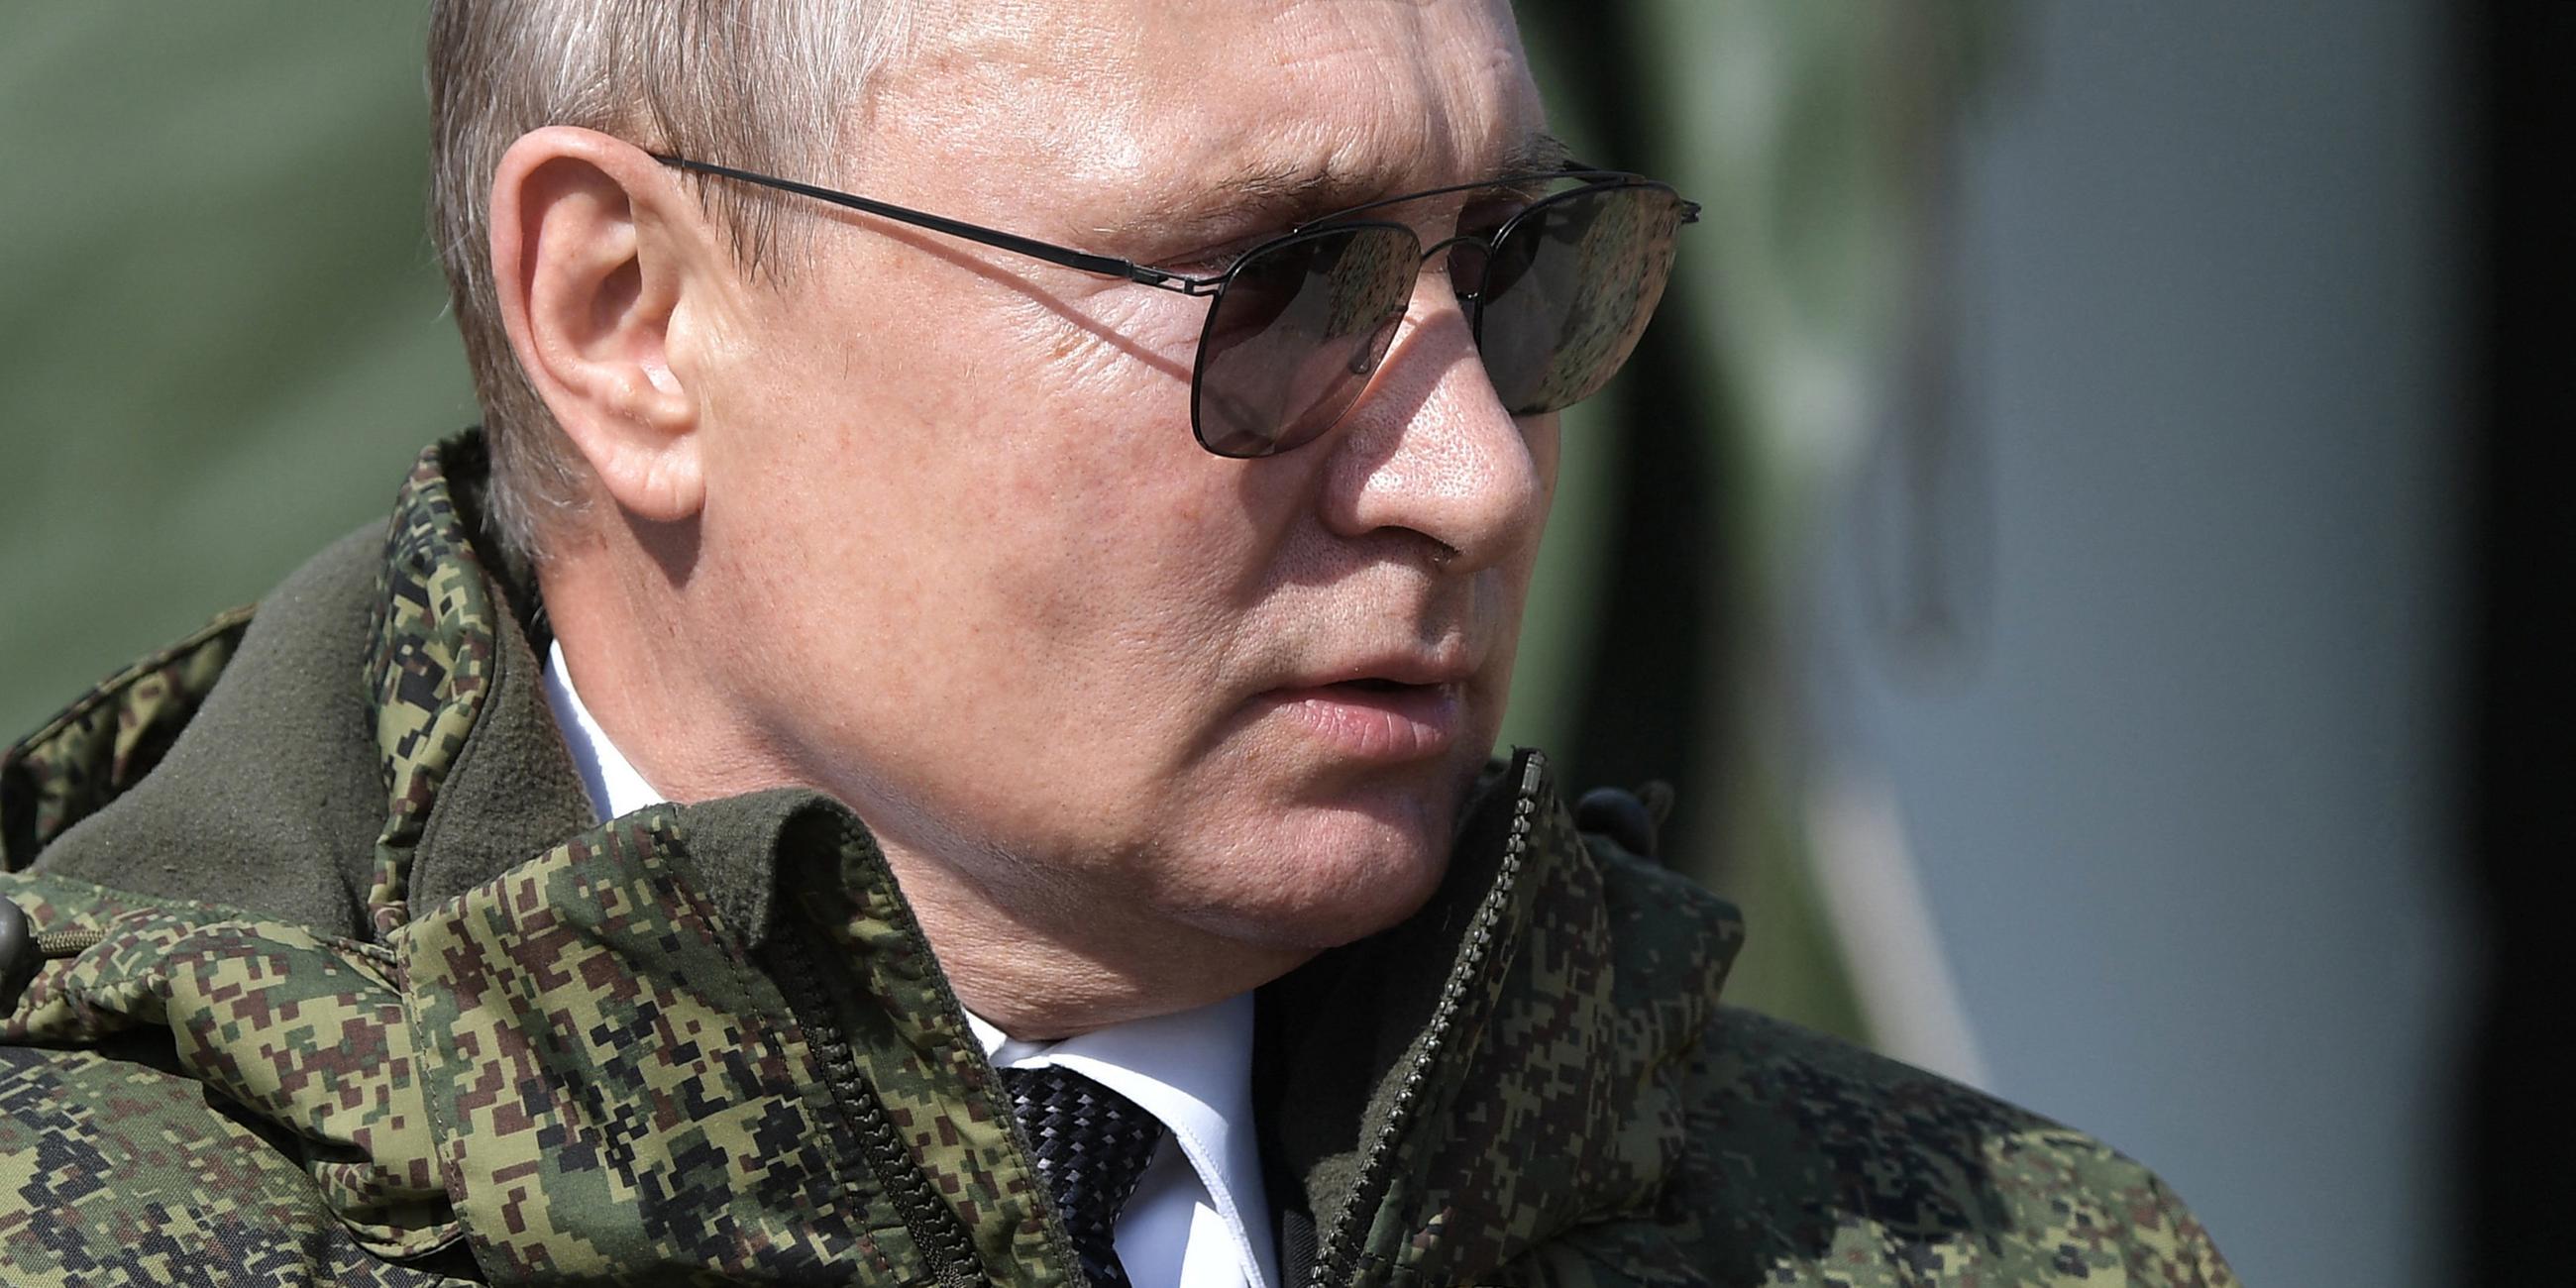 "Putin gegen die Welt": Der russische Präsident Wladimir Putin bei der Militärübung im Jahr 2019 in Militärjacke und Sonnenbrille.